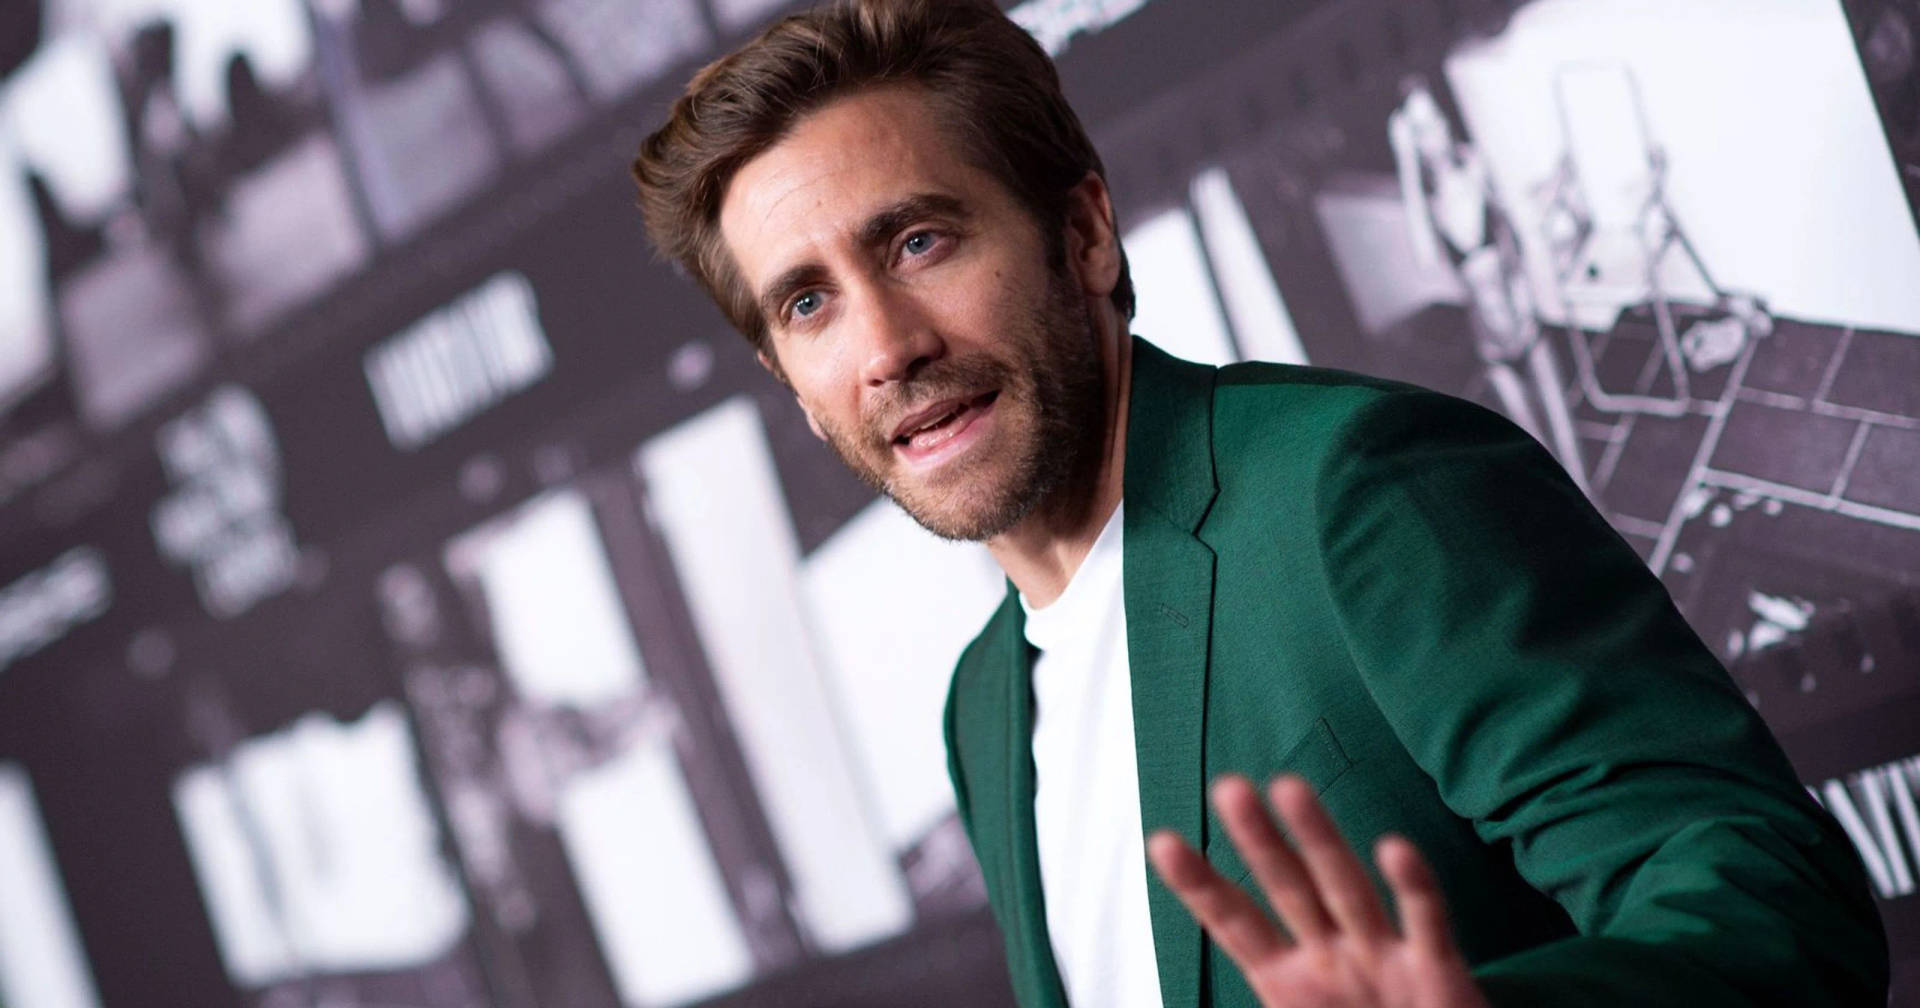 Jake Gyllenhaal In Green